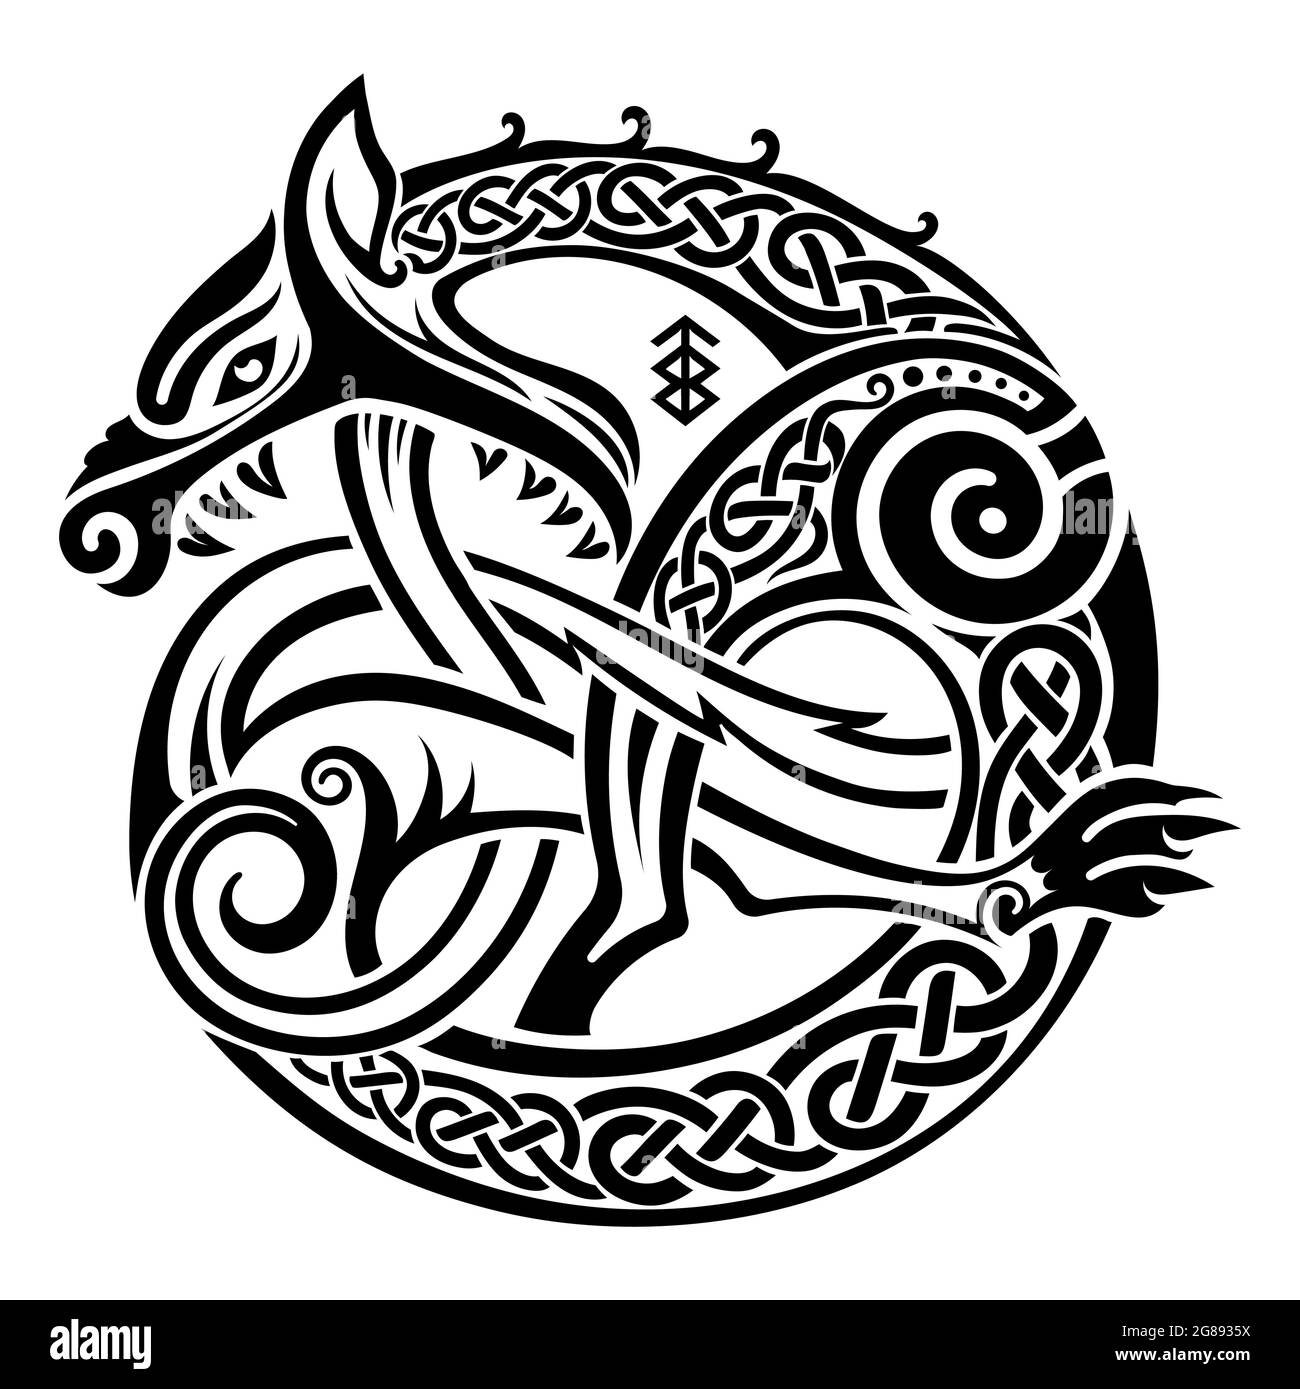 Design vichingo scandinavo. Illustrazione di una bestia mitologica - Fendir Wolf in stile Celtico scandinavo Illustrazione Vettoriale